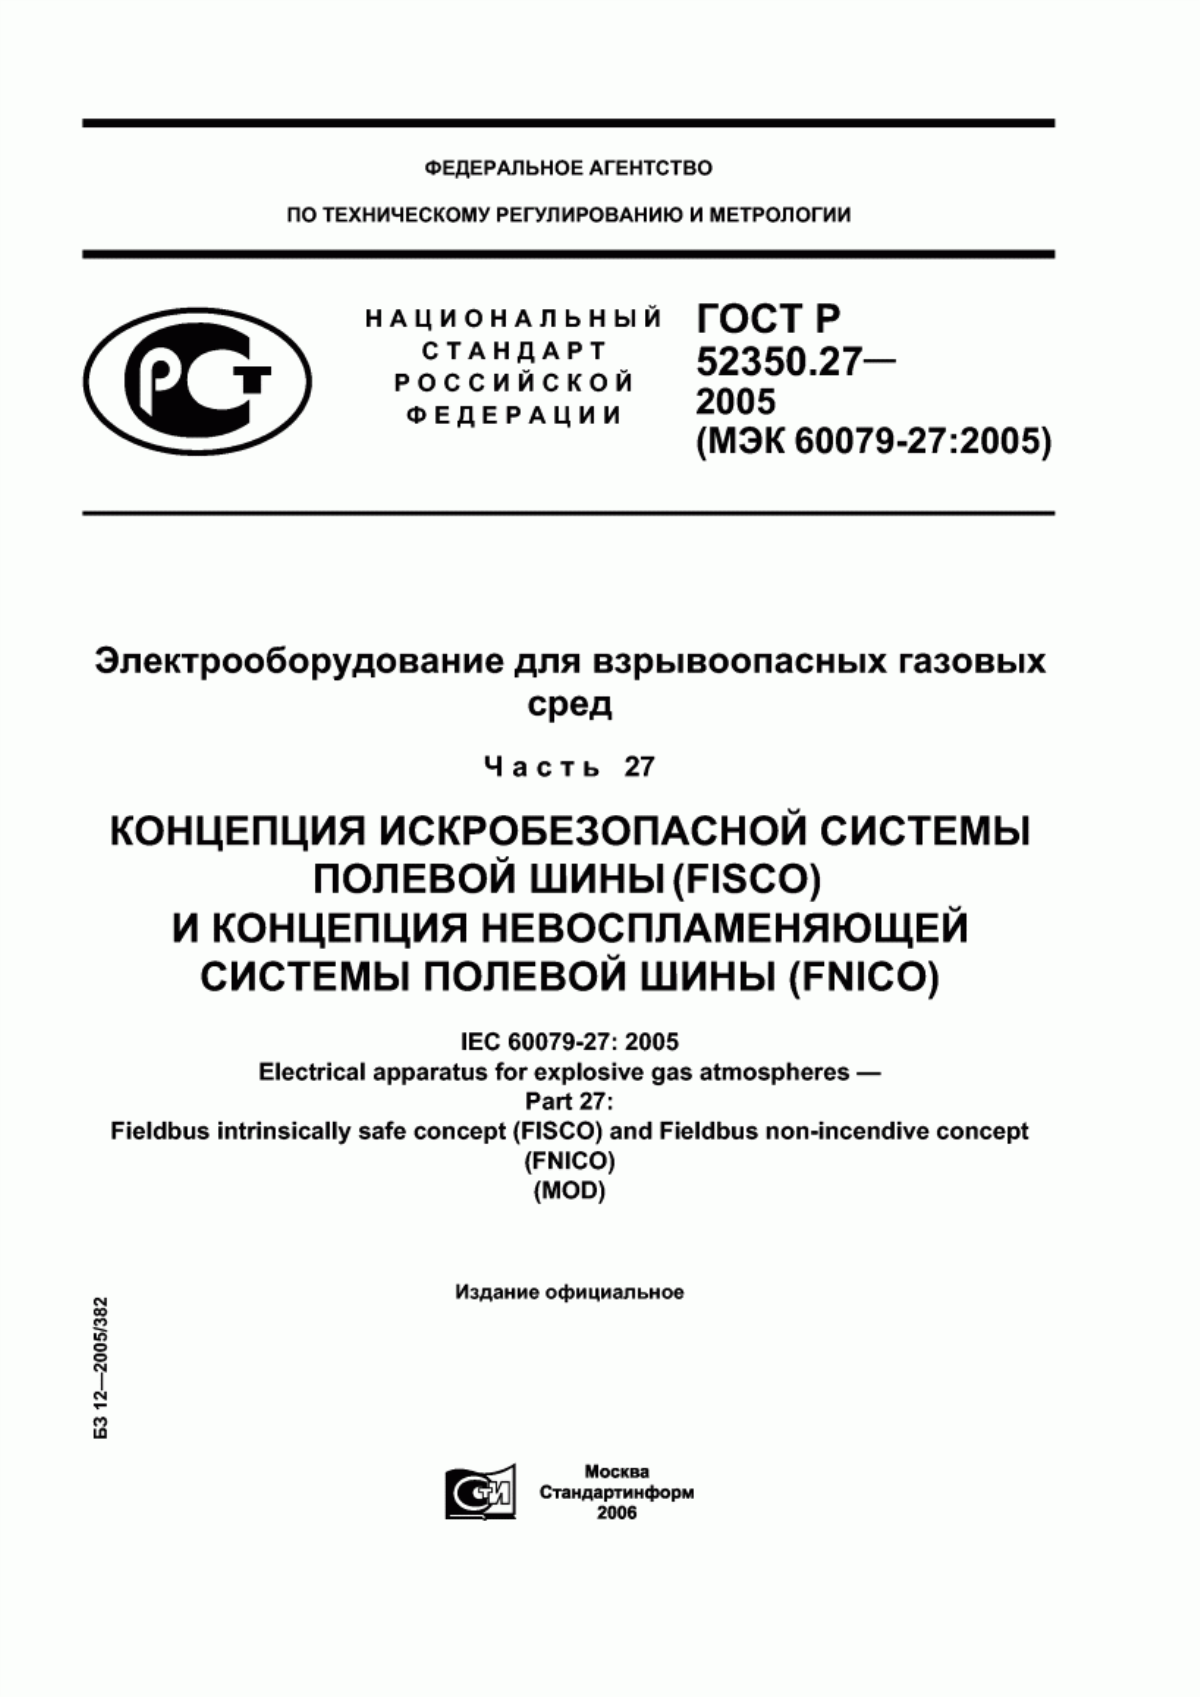 ГОСТ Р 52350.27-2005 Электрооборудование для взрывоопасных газовых сред. Часть 27. Концепция искробезопасной системы полевой шины (FISCO) и концепция невоспламеняющей системы полевой шины (FNICO)